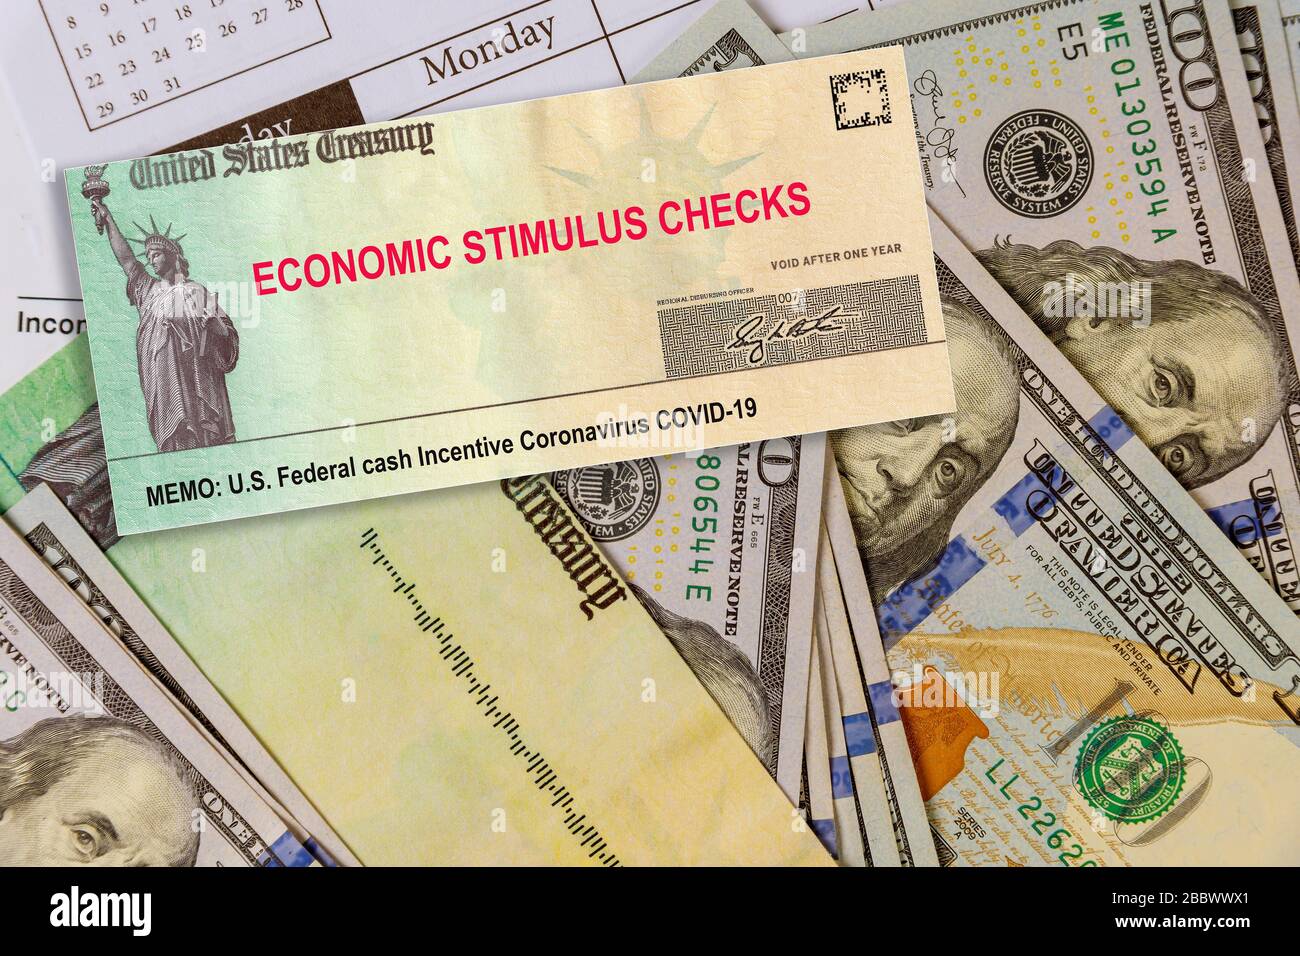 US-Bundesfinanzanreize Coronavirus COVID-19 zum globalen Konjunkturpaket zur pandemischen Lockdown von der Regierung Stockfoto